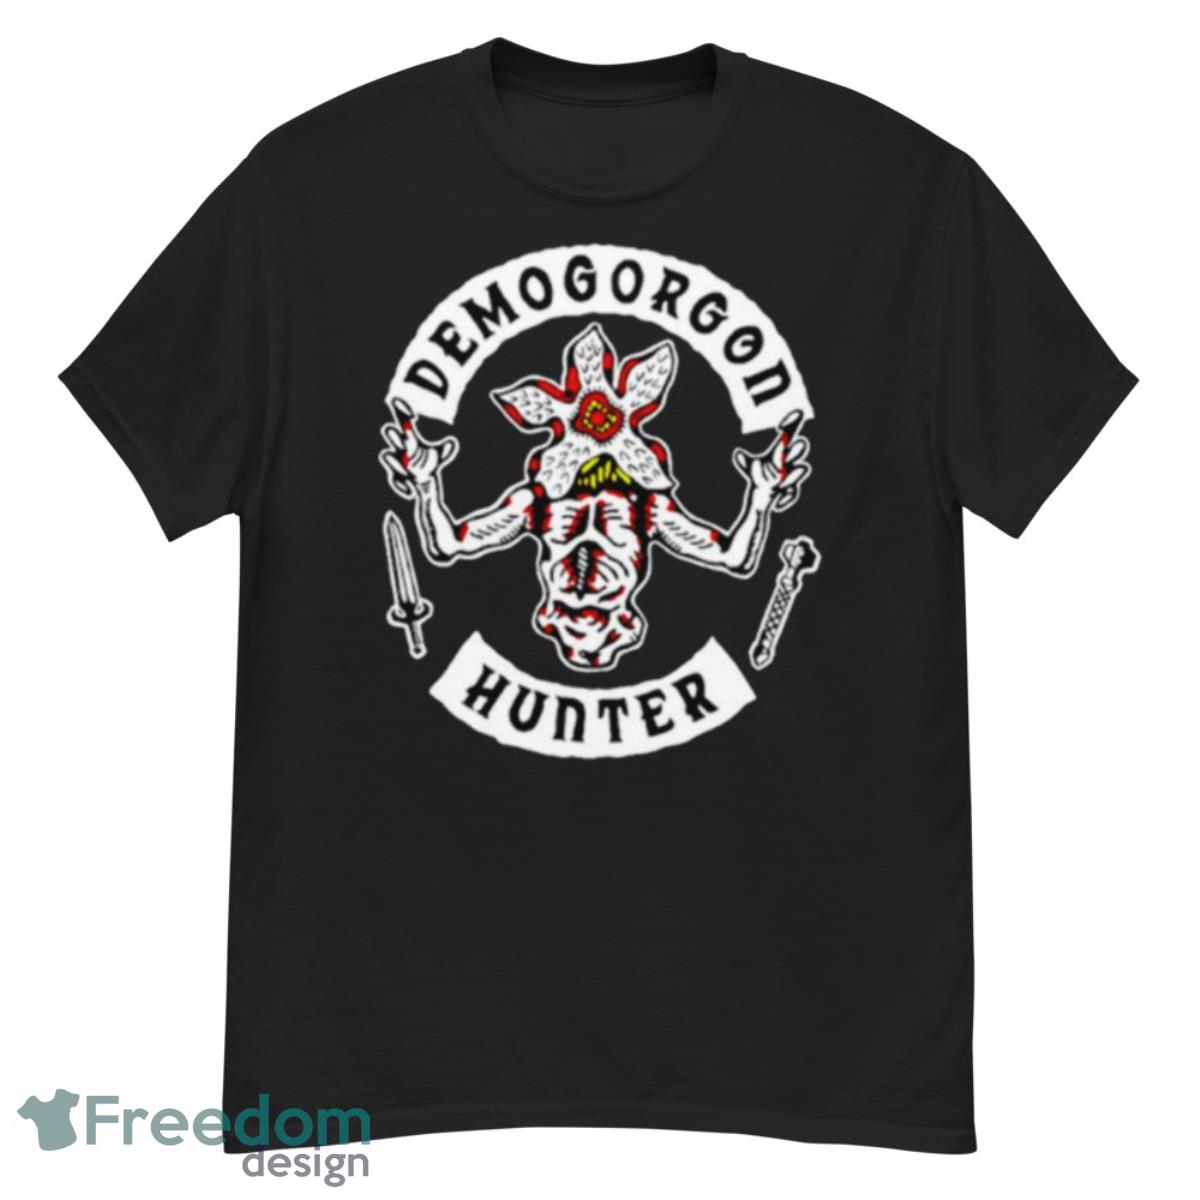 Demogorgon Hunter Stranger Things Shirt - G500 Men’s Classic T-Shirt